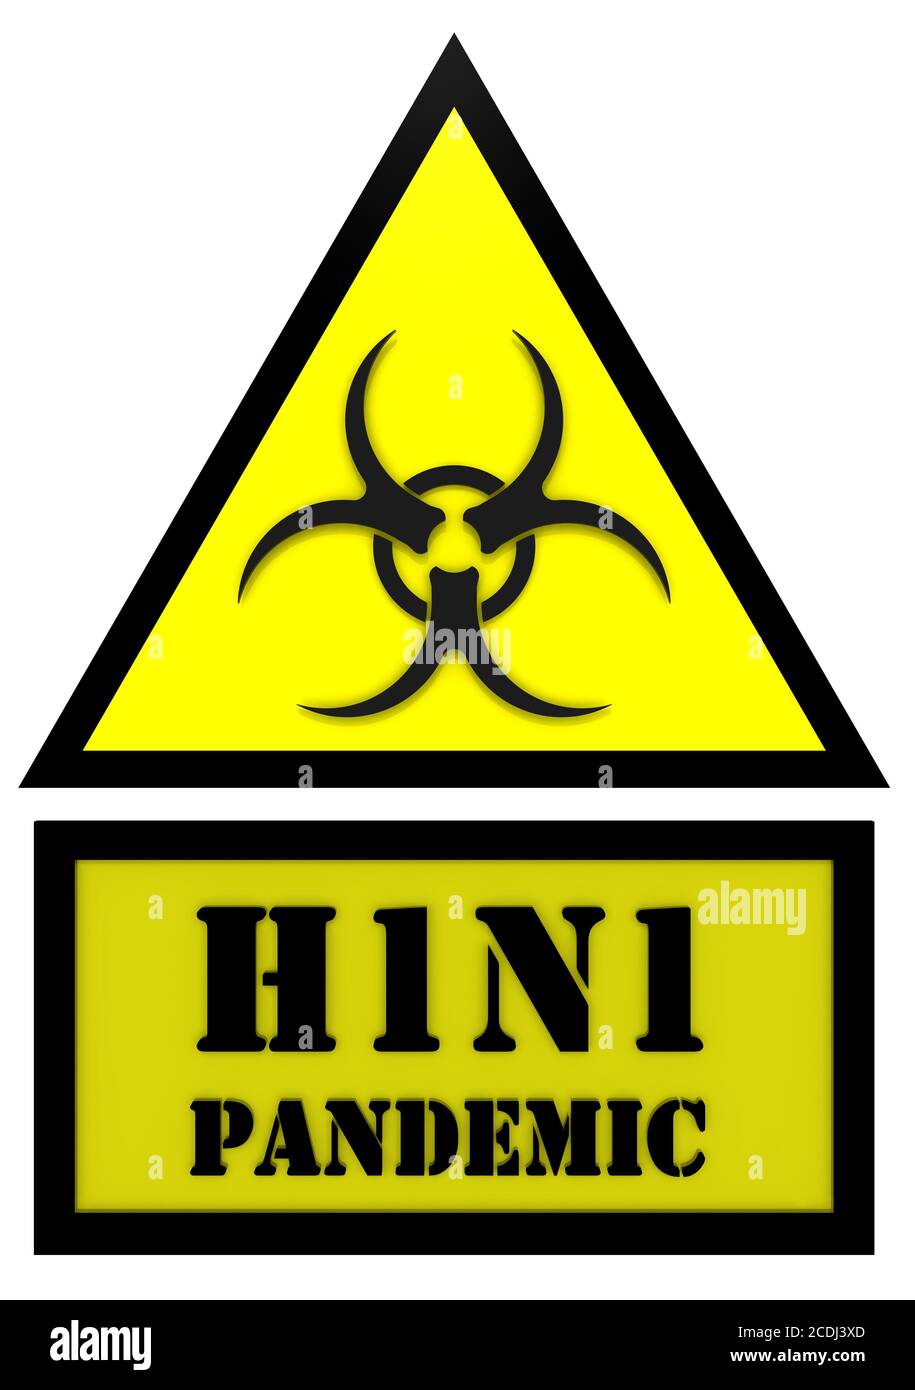 Segno dell'epidemia di influenza H1N1. Cartello giallo con il simbolo di rischio biologico e la dicitura "PANDEMIA H1N1". Isolato. Illustrazione 3D Foto Stock